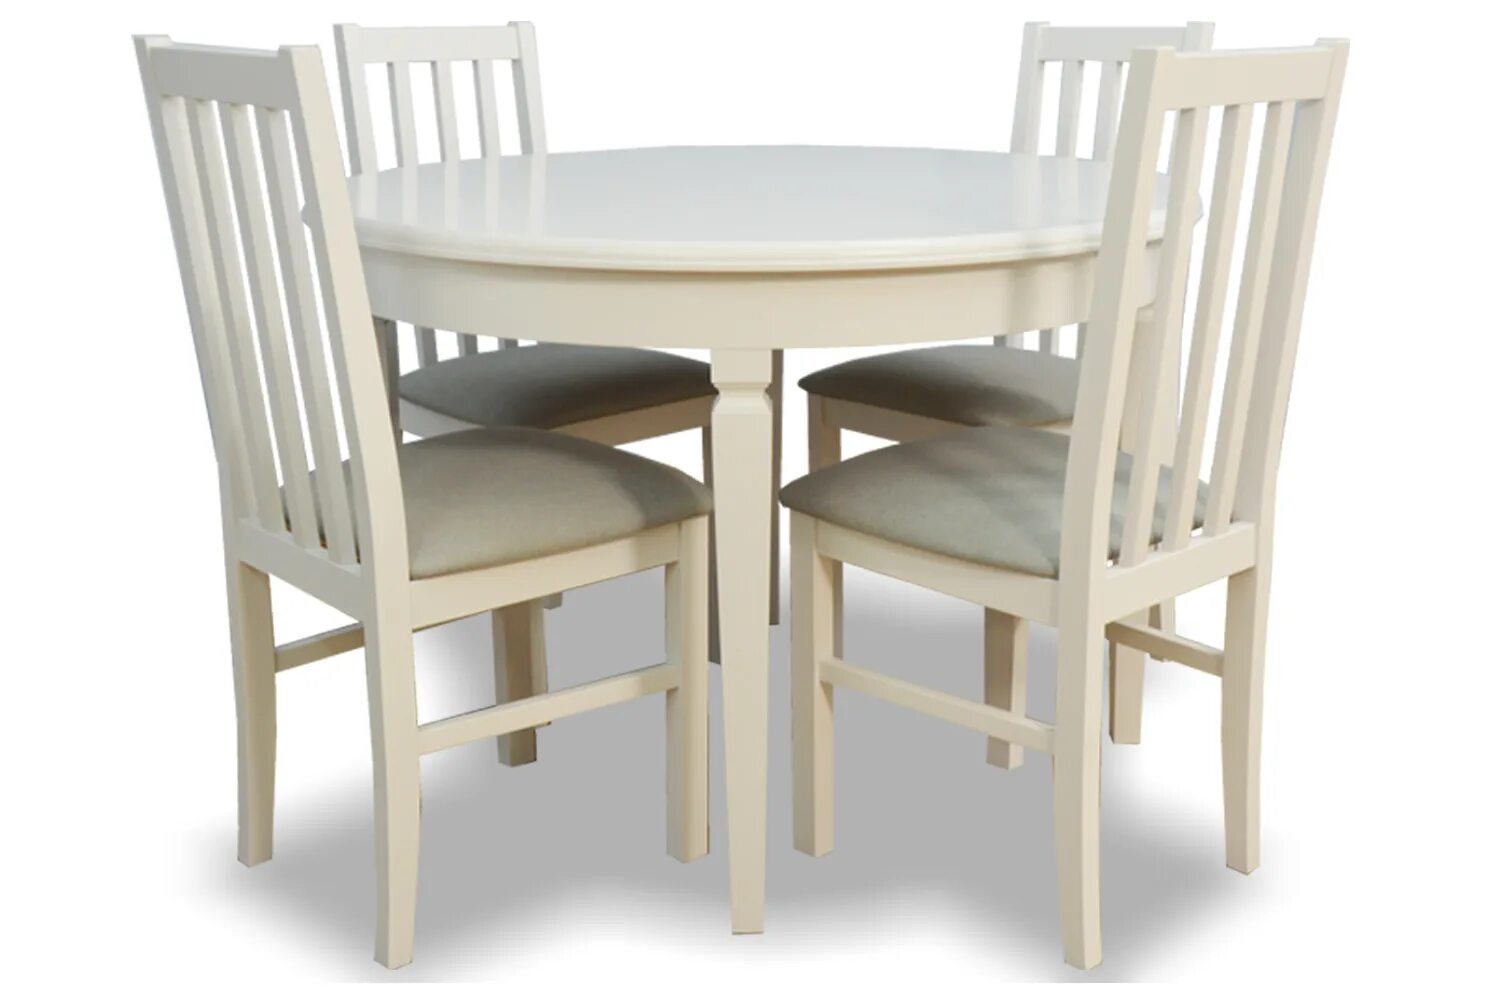 Кухонный комплект стол и стулья. Обеденный набор Halmar Faust (стол + 4 стула). Хофф наборы стол и стулья. Обеденный комплект для кухни стол и стулья. Кухонный набор стол и стулья.